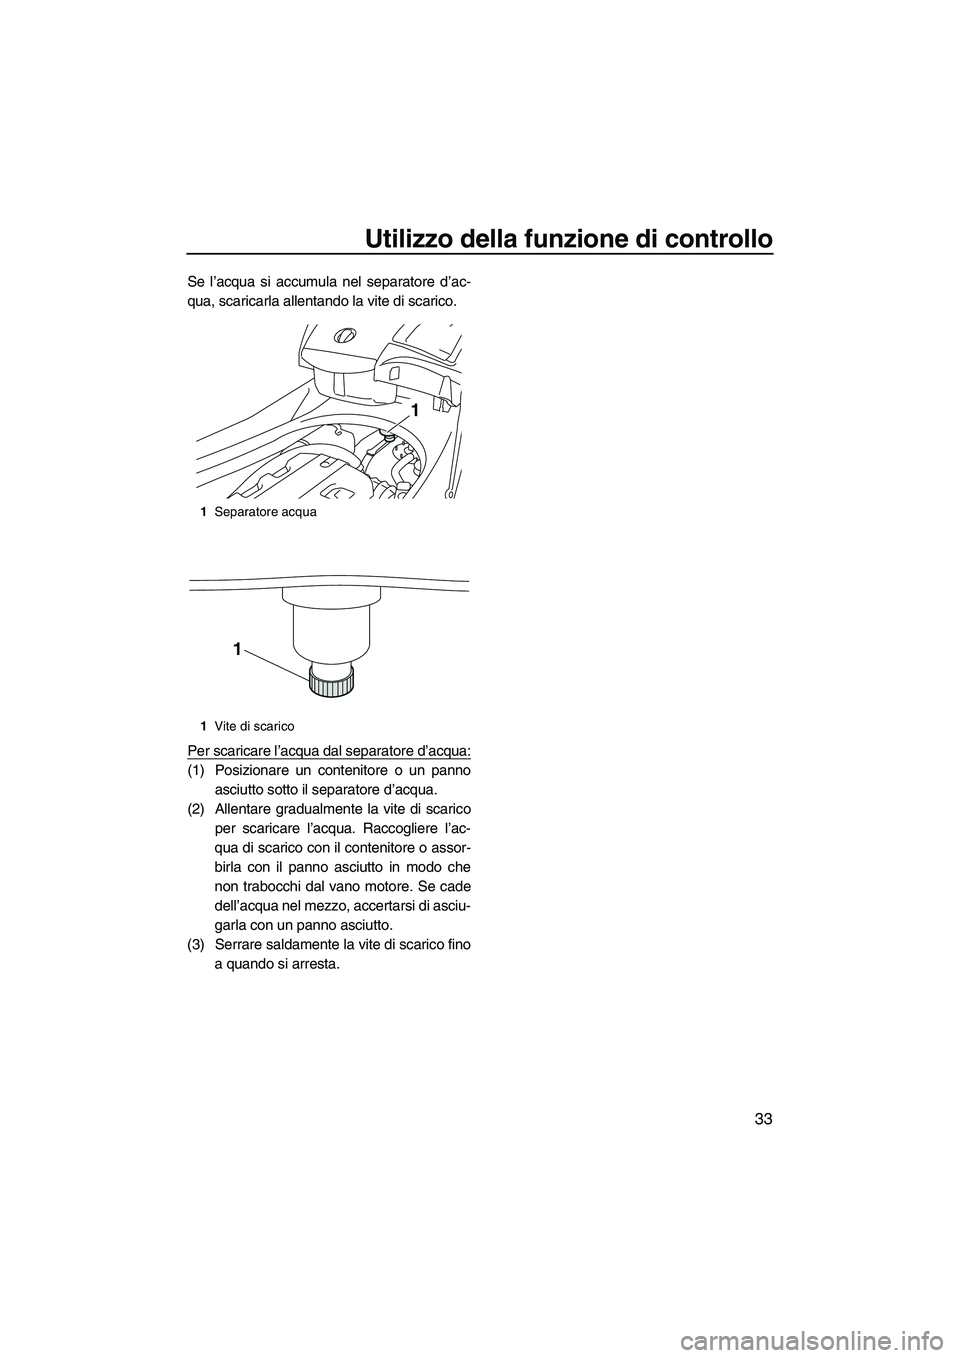 YAMAHA FX HO 2010  Manuale duso (in Italian) Utilizzo della funzione di controllo
33
Se l’acqua si accumula nel separatore d’ac-
qua, scaricarla allentando la vite di scarico.
Per scaricare l’acqua dal separatore d’acqua:
(1) Posizionare